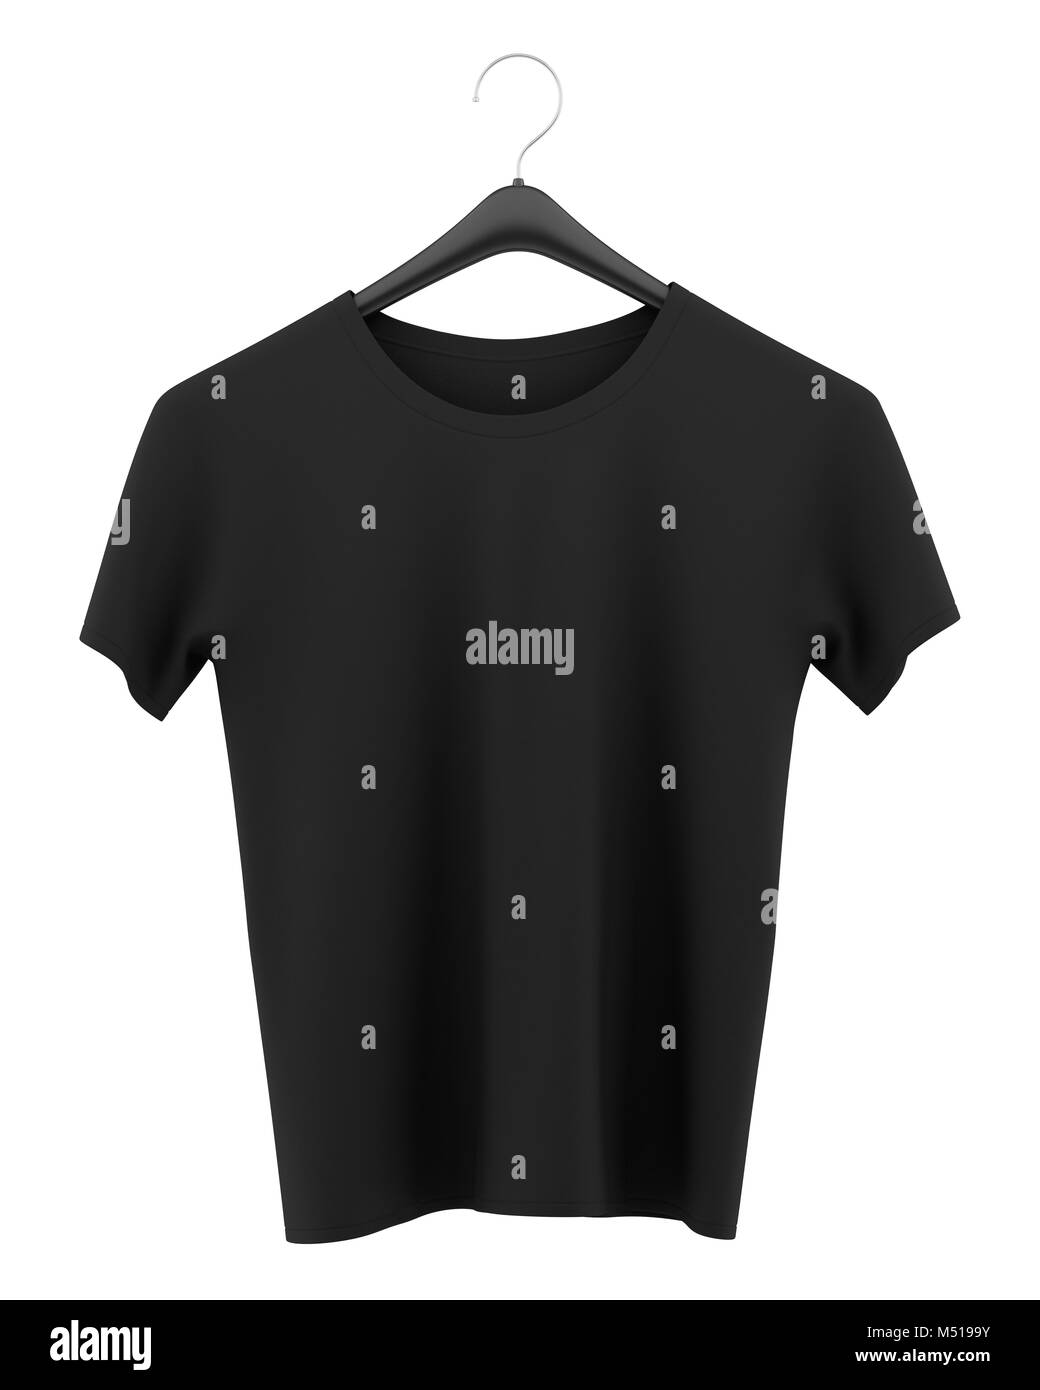 black t-shirt on clothing hanger isolated on white background Stock Photo